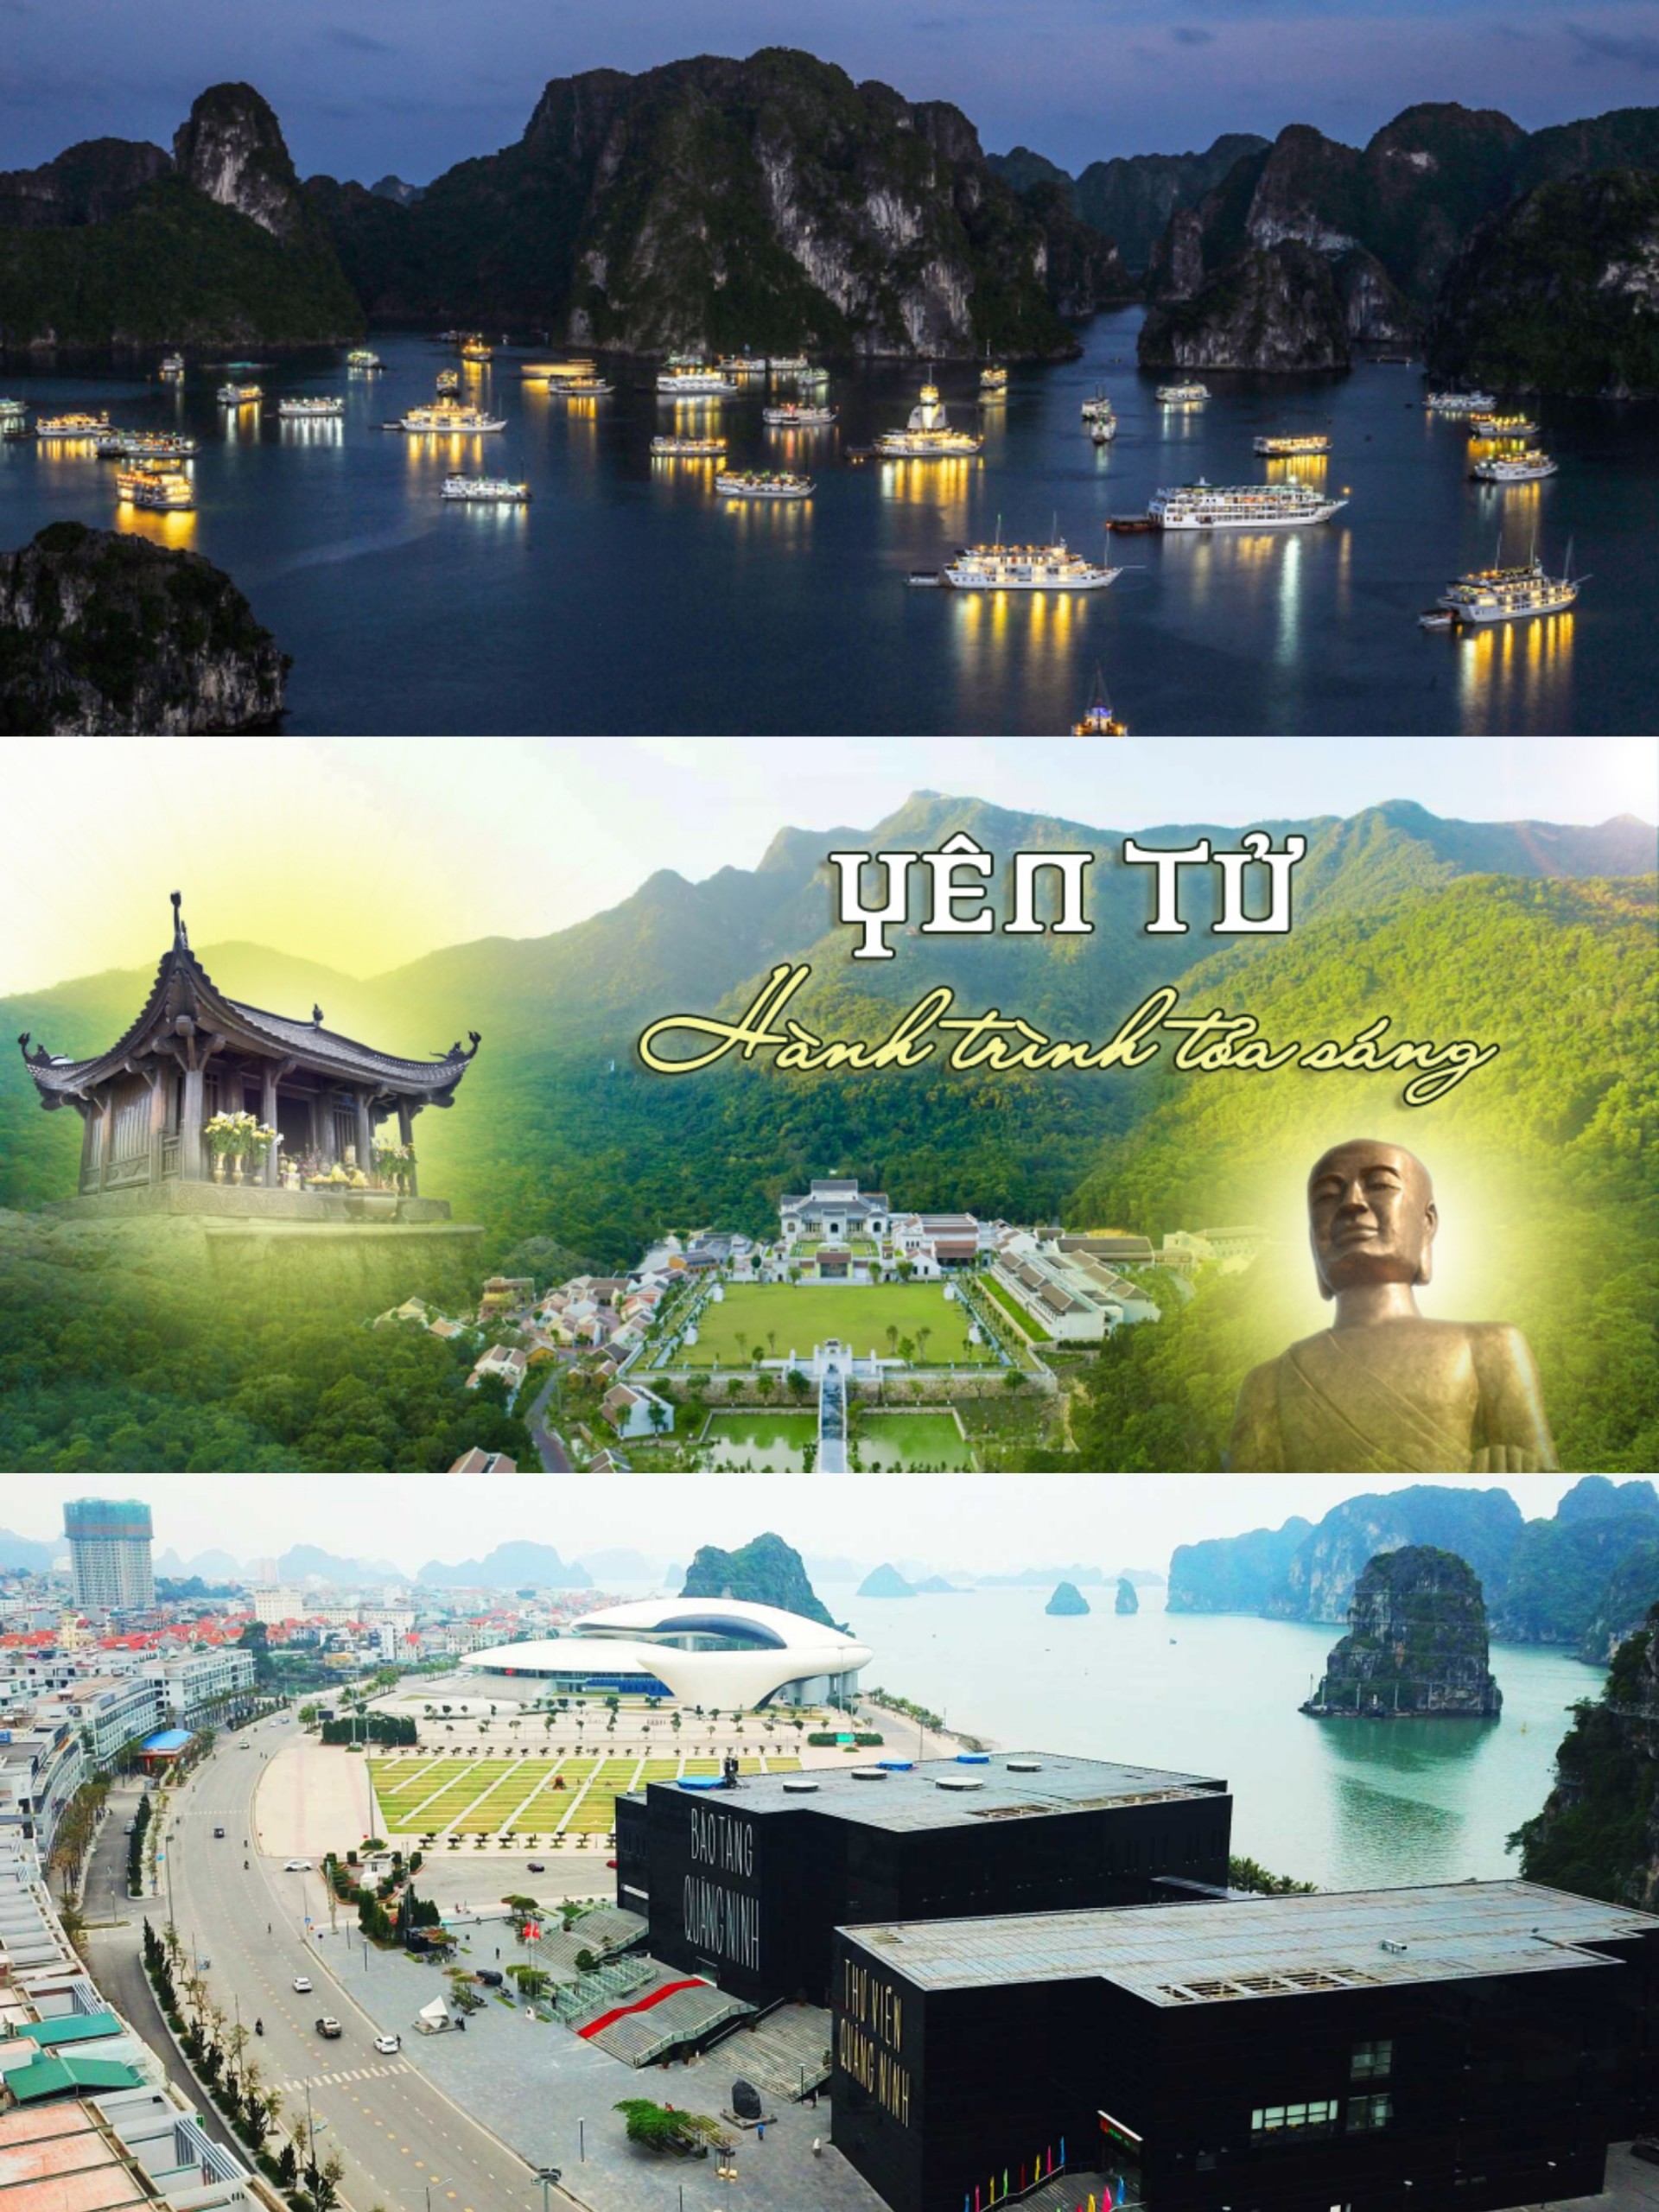 Quảng Ninh: Miễn phí tham quan vịnh Hạ Long, Yên Tử và Bảo tàng tỉnh đến hết năm - Ảnh 1.